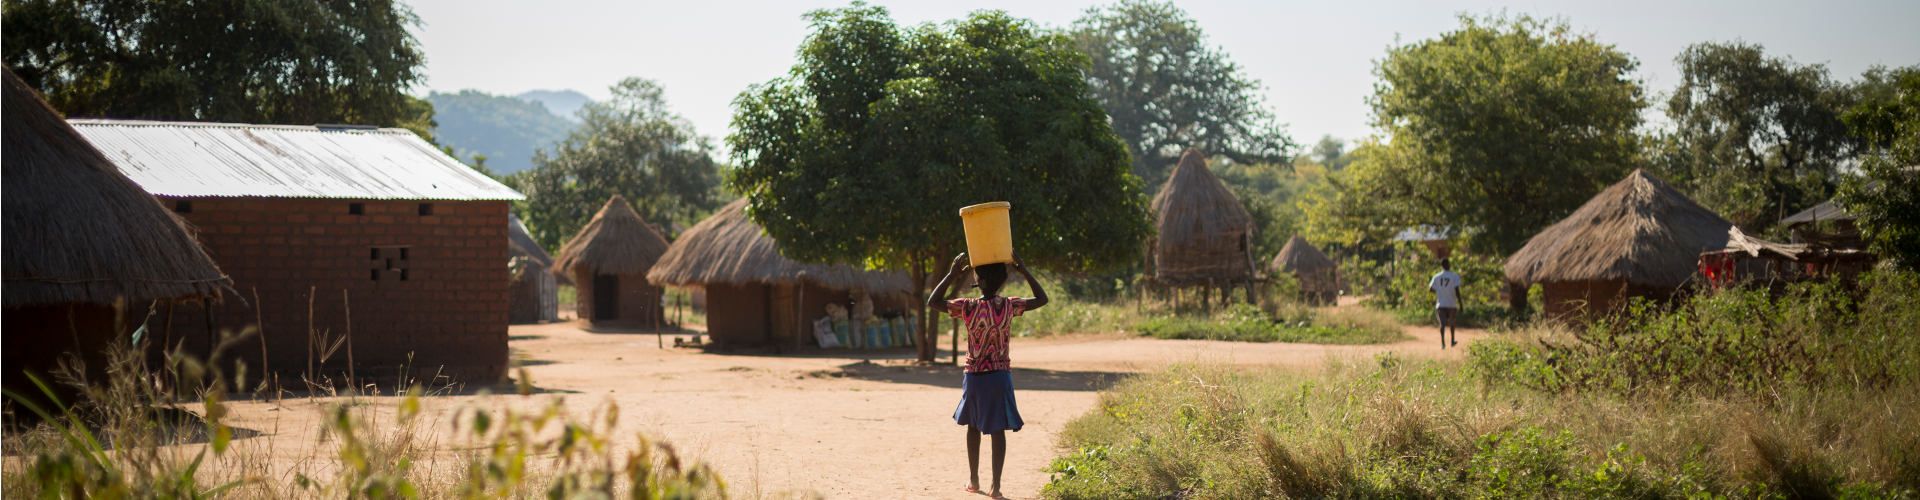 Dorf in Sambia